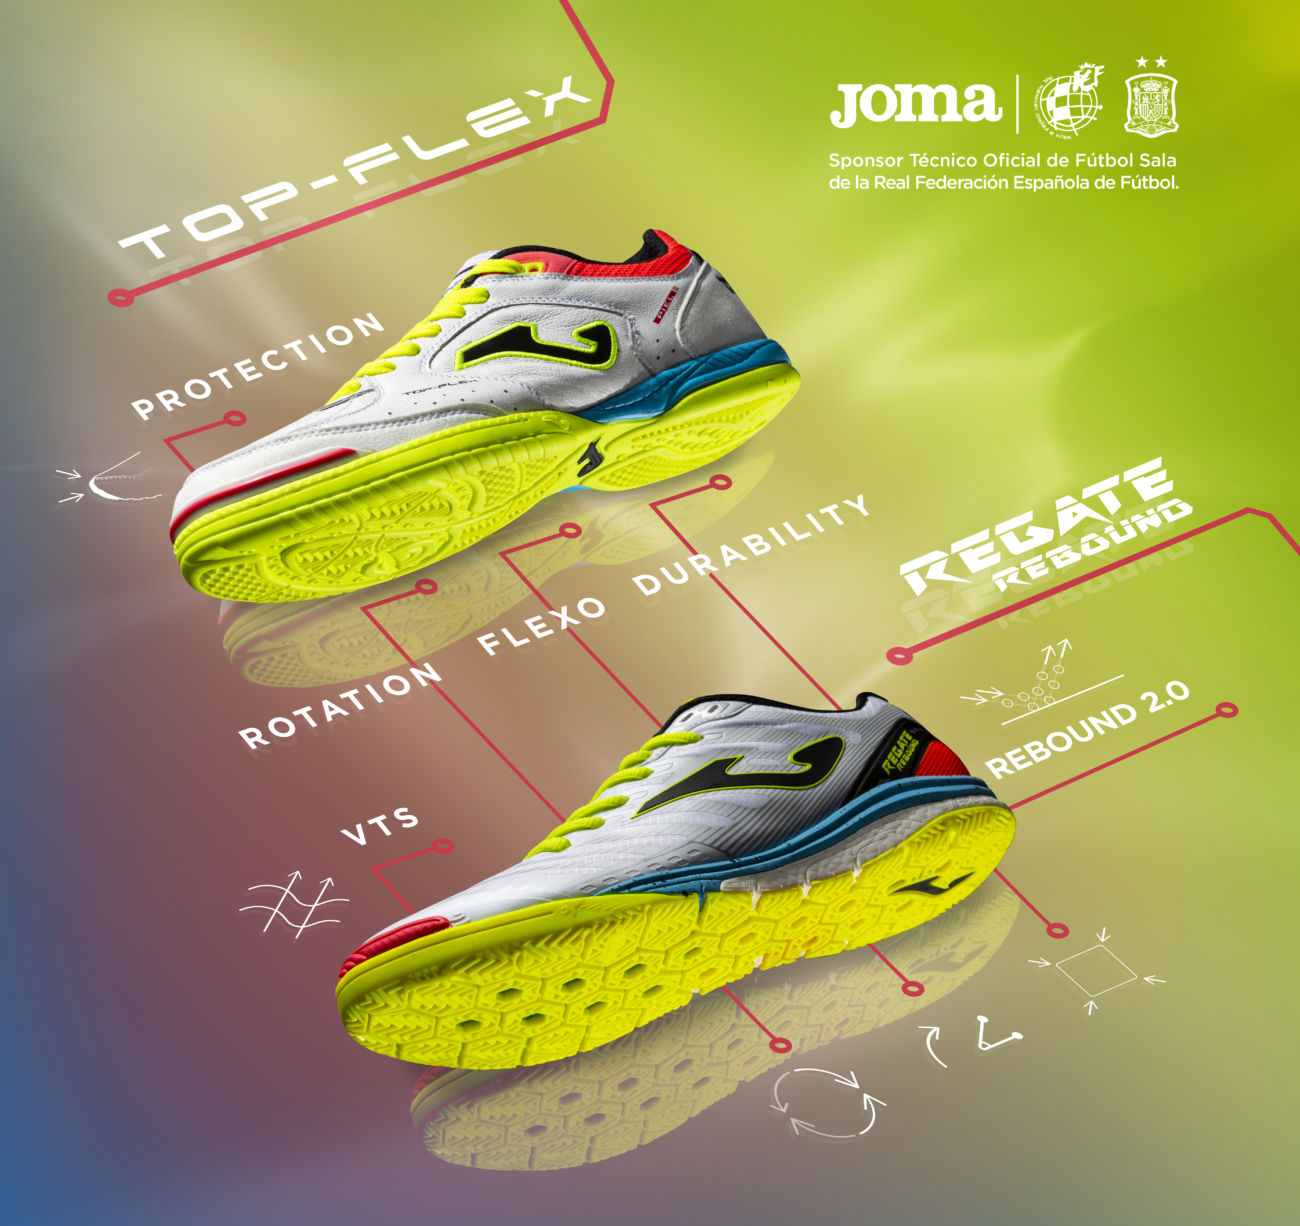 Joma lanza zapatillas en edición especial para la RFEF - Diffusion Sport